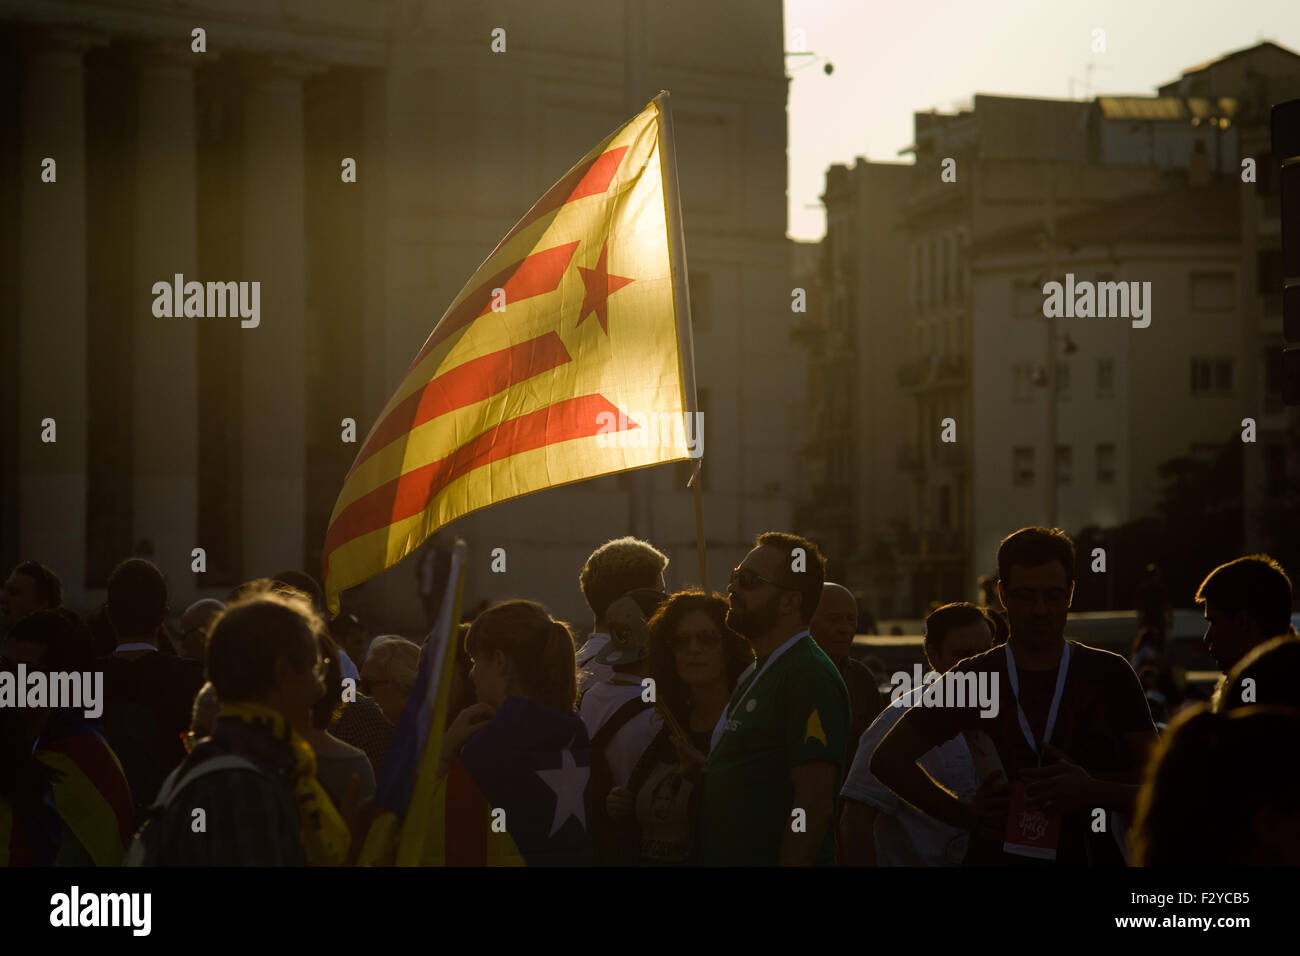 Barcelone, Catalogne, Espagne. 25 Septembre, 2015. Un ESTELADA Drapeau indépendantiste (catalan) est visible pendant la campagne finale rallye de 'Junts pel Si' (ensemble pour Oui) à Barcelone le 25 septembre, 2015. Dimanche prochain auront lieu des élections régionales en Catalogne. Les sondages indiquent que l'indépendance parties pourraient obtenir la majorité absolue. Crédit : Jordi Boixareu/ZUMA/Alamy Fil Live News Banque D'Images